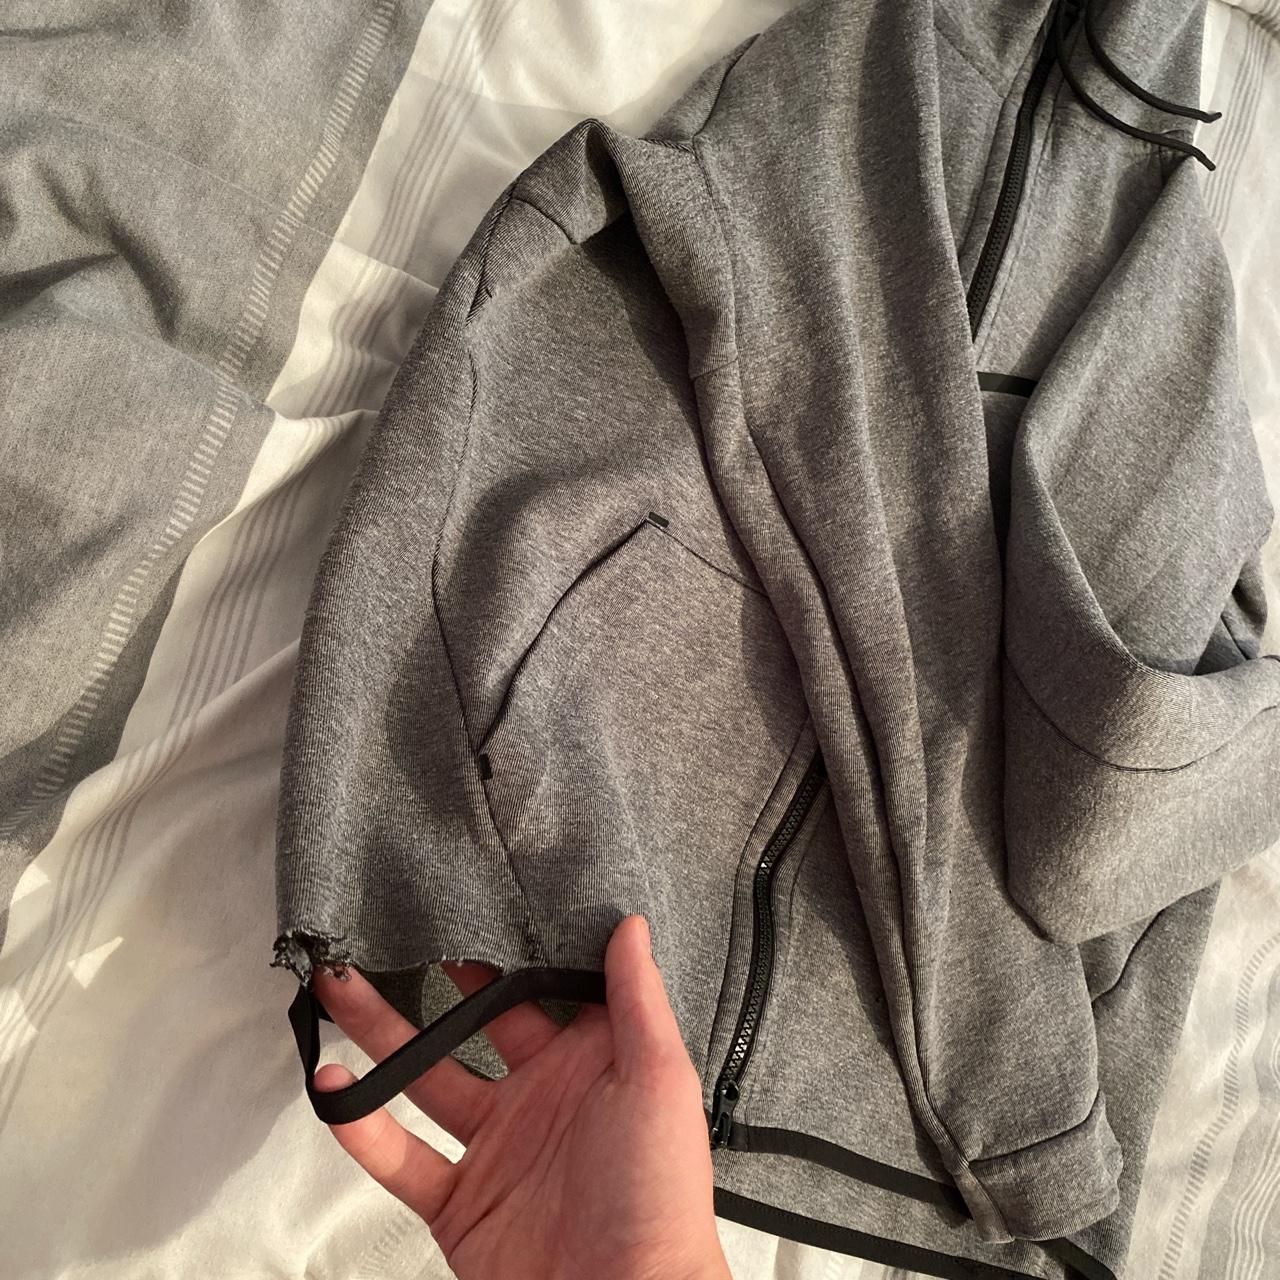 Nike Tech Fleece tracksuit Jogggers size S hoodie... - Depop